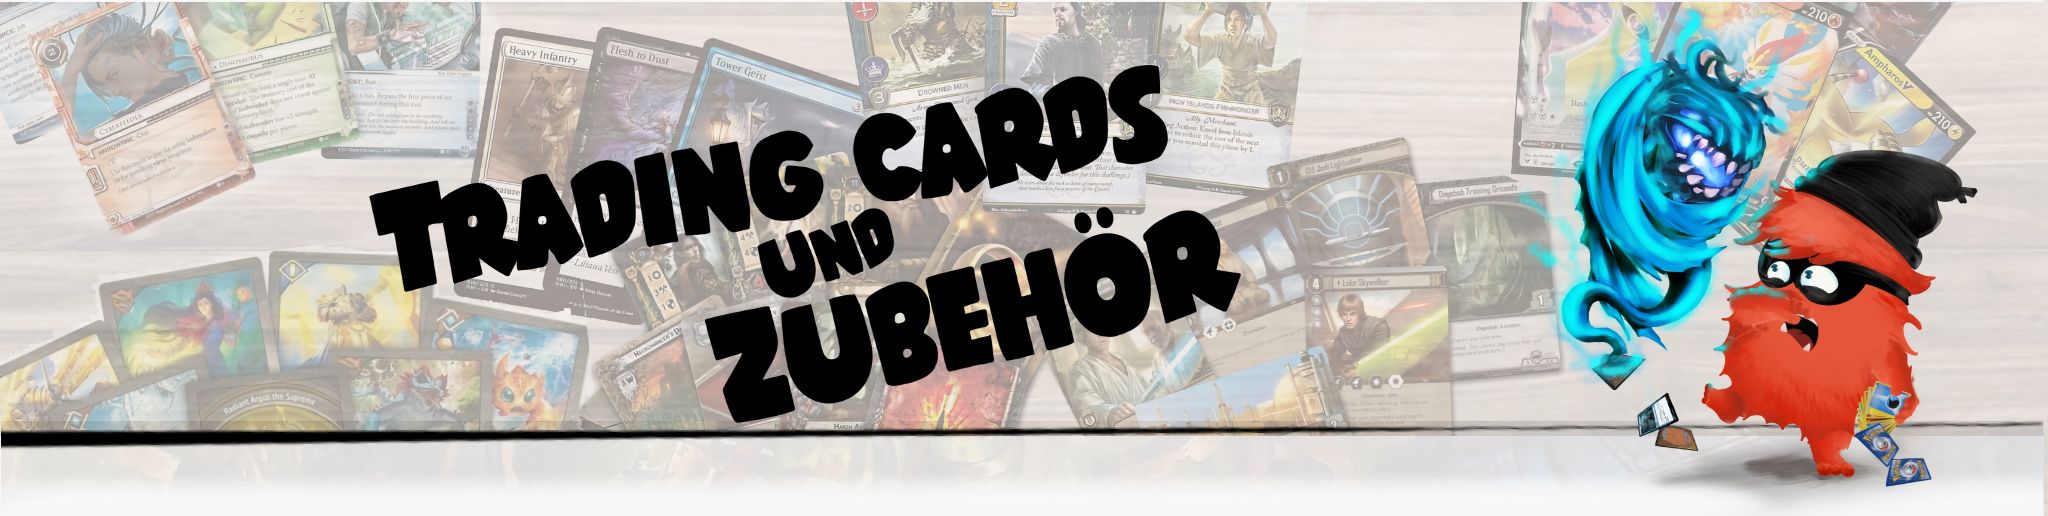 Trading Cards & Zubehör